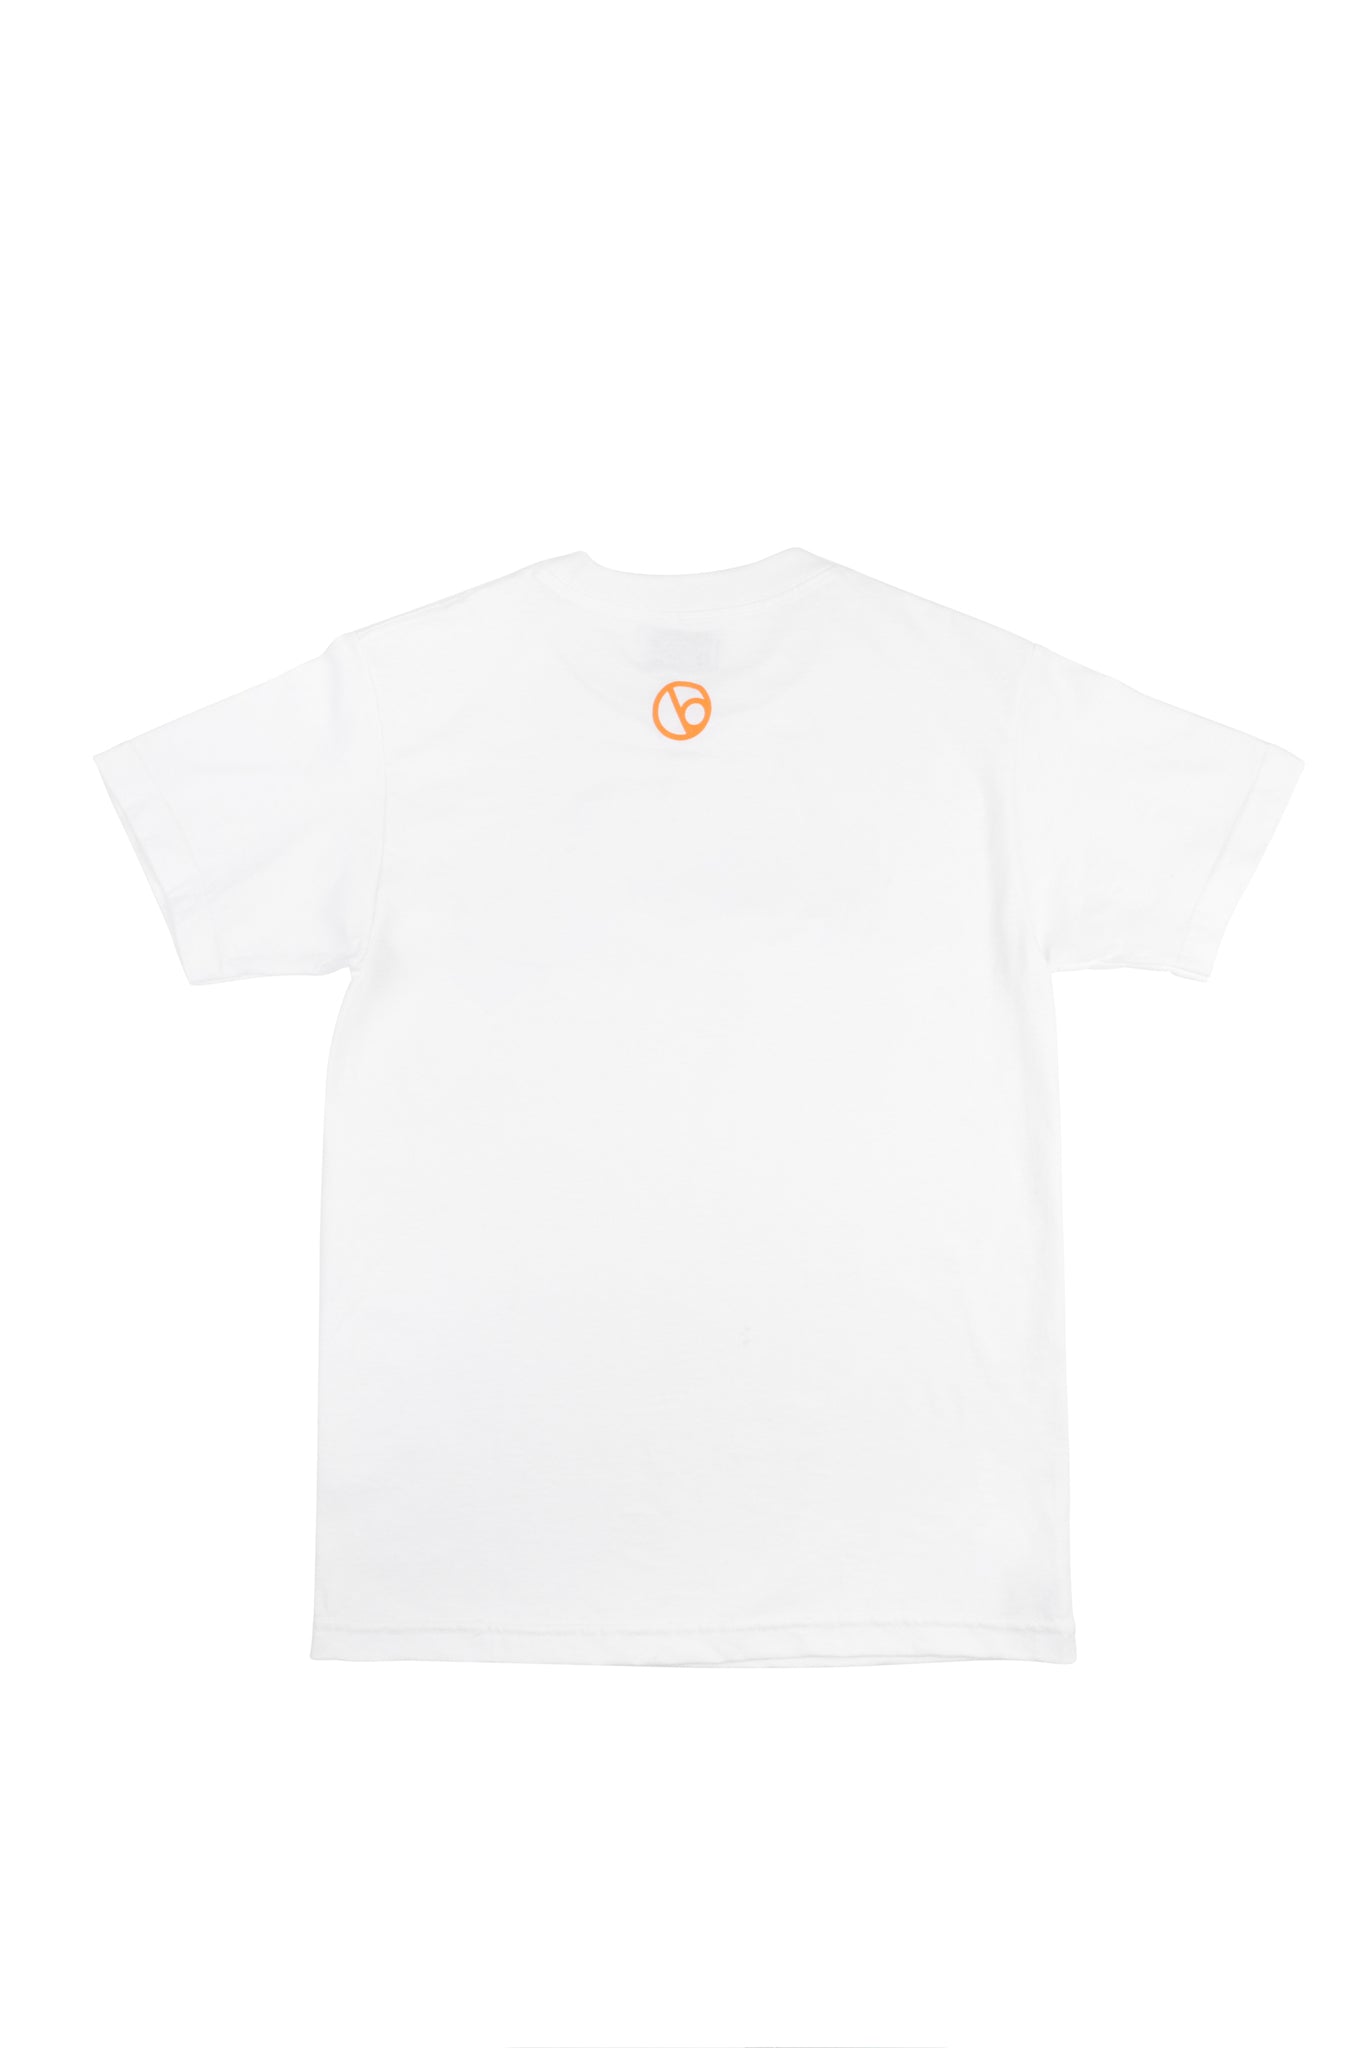 Script Logo T-Shirt - White / Orange